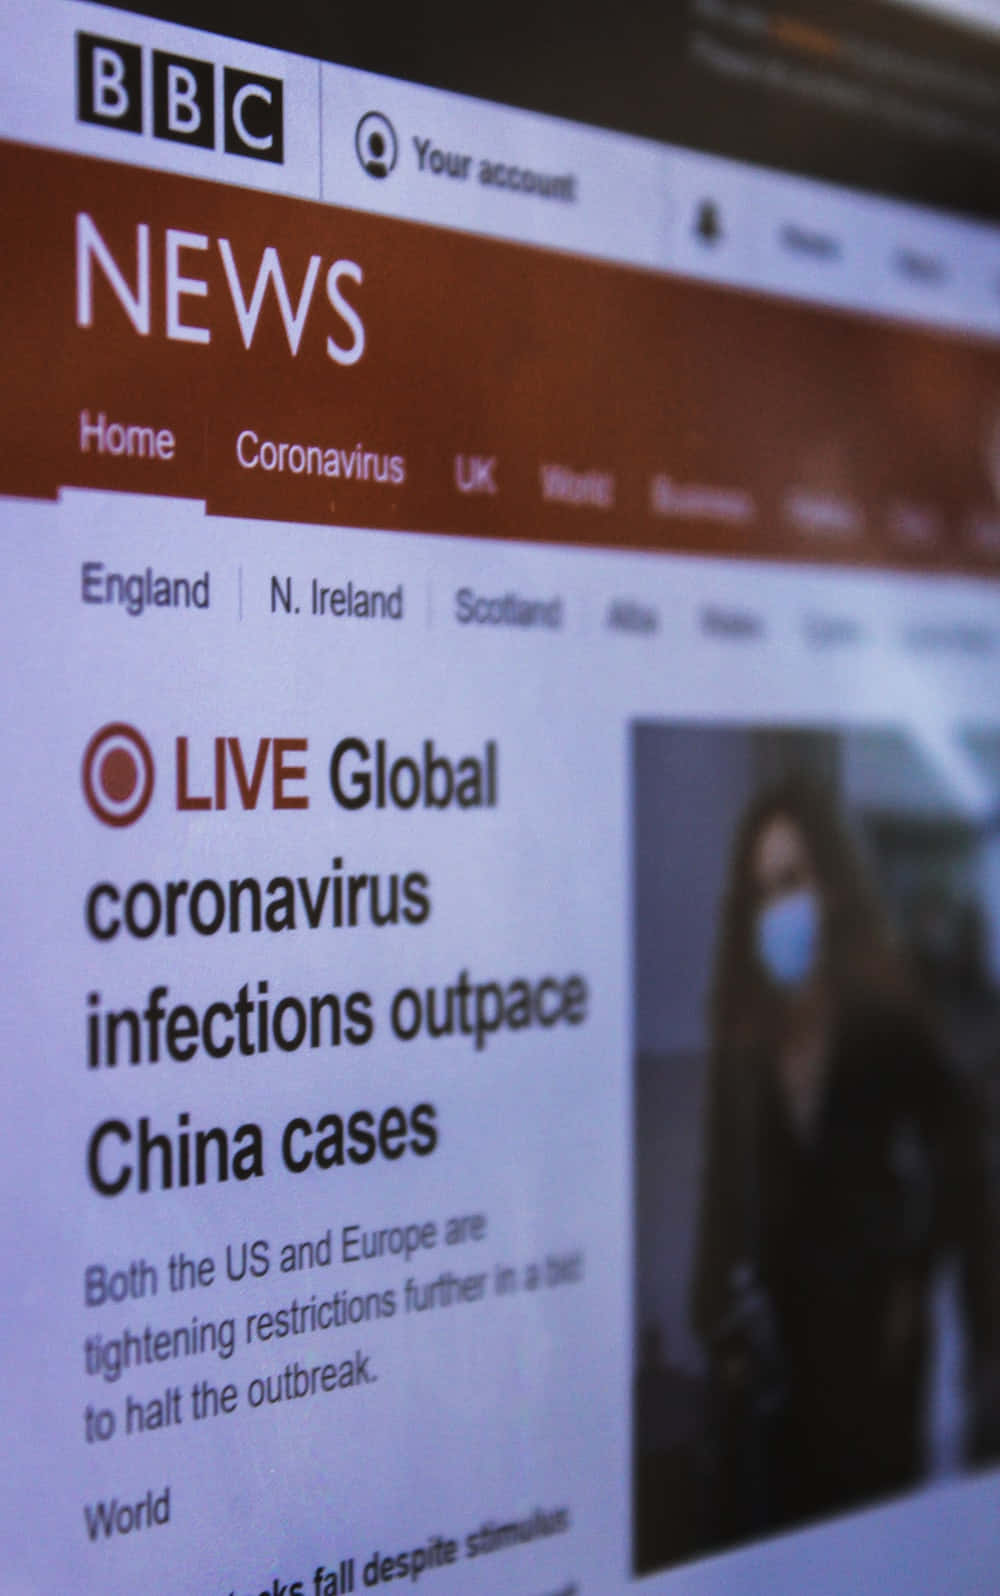 Immaginedel Coronavirus Di Bbc News.